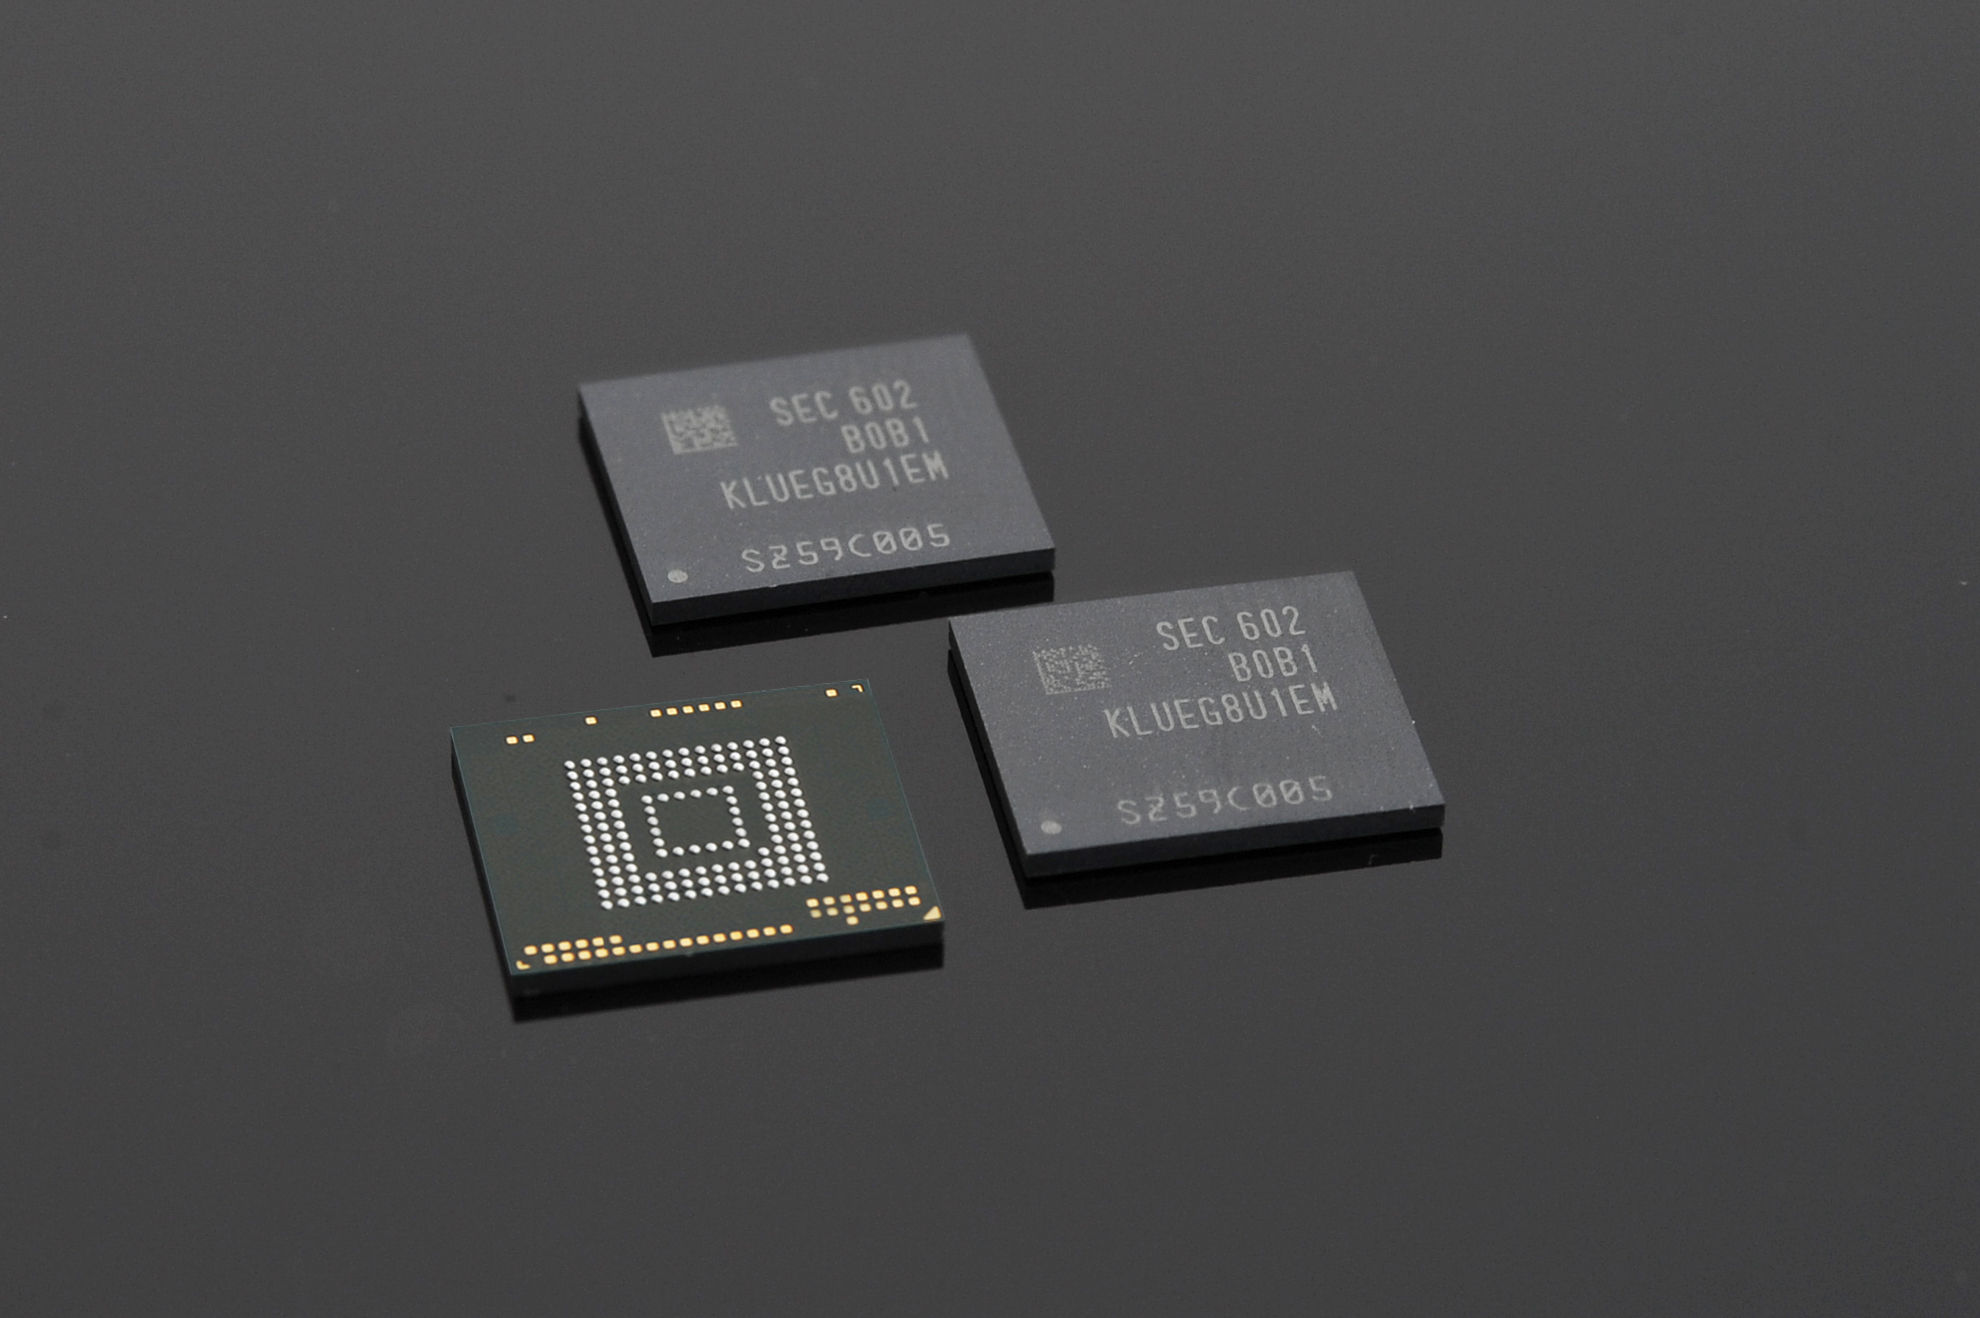 A Samsung bemutatta az iparág első 256 GB-os UFS memóriáját